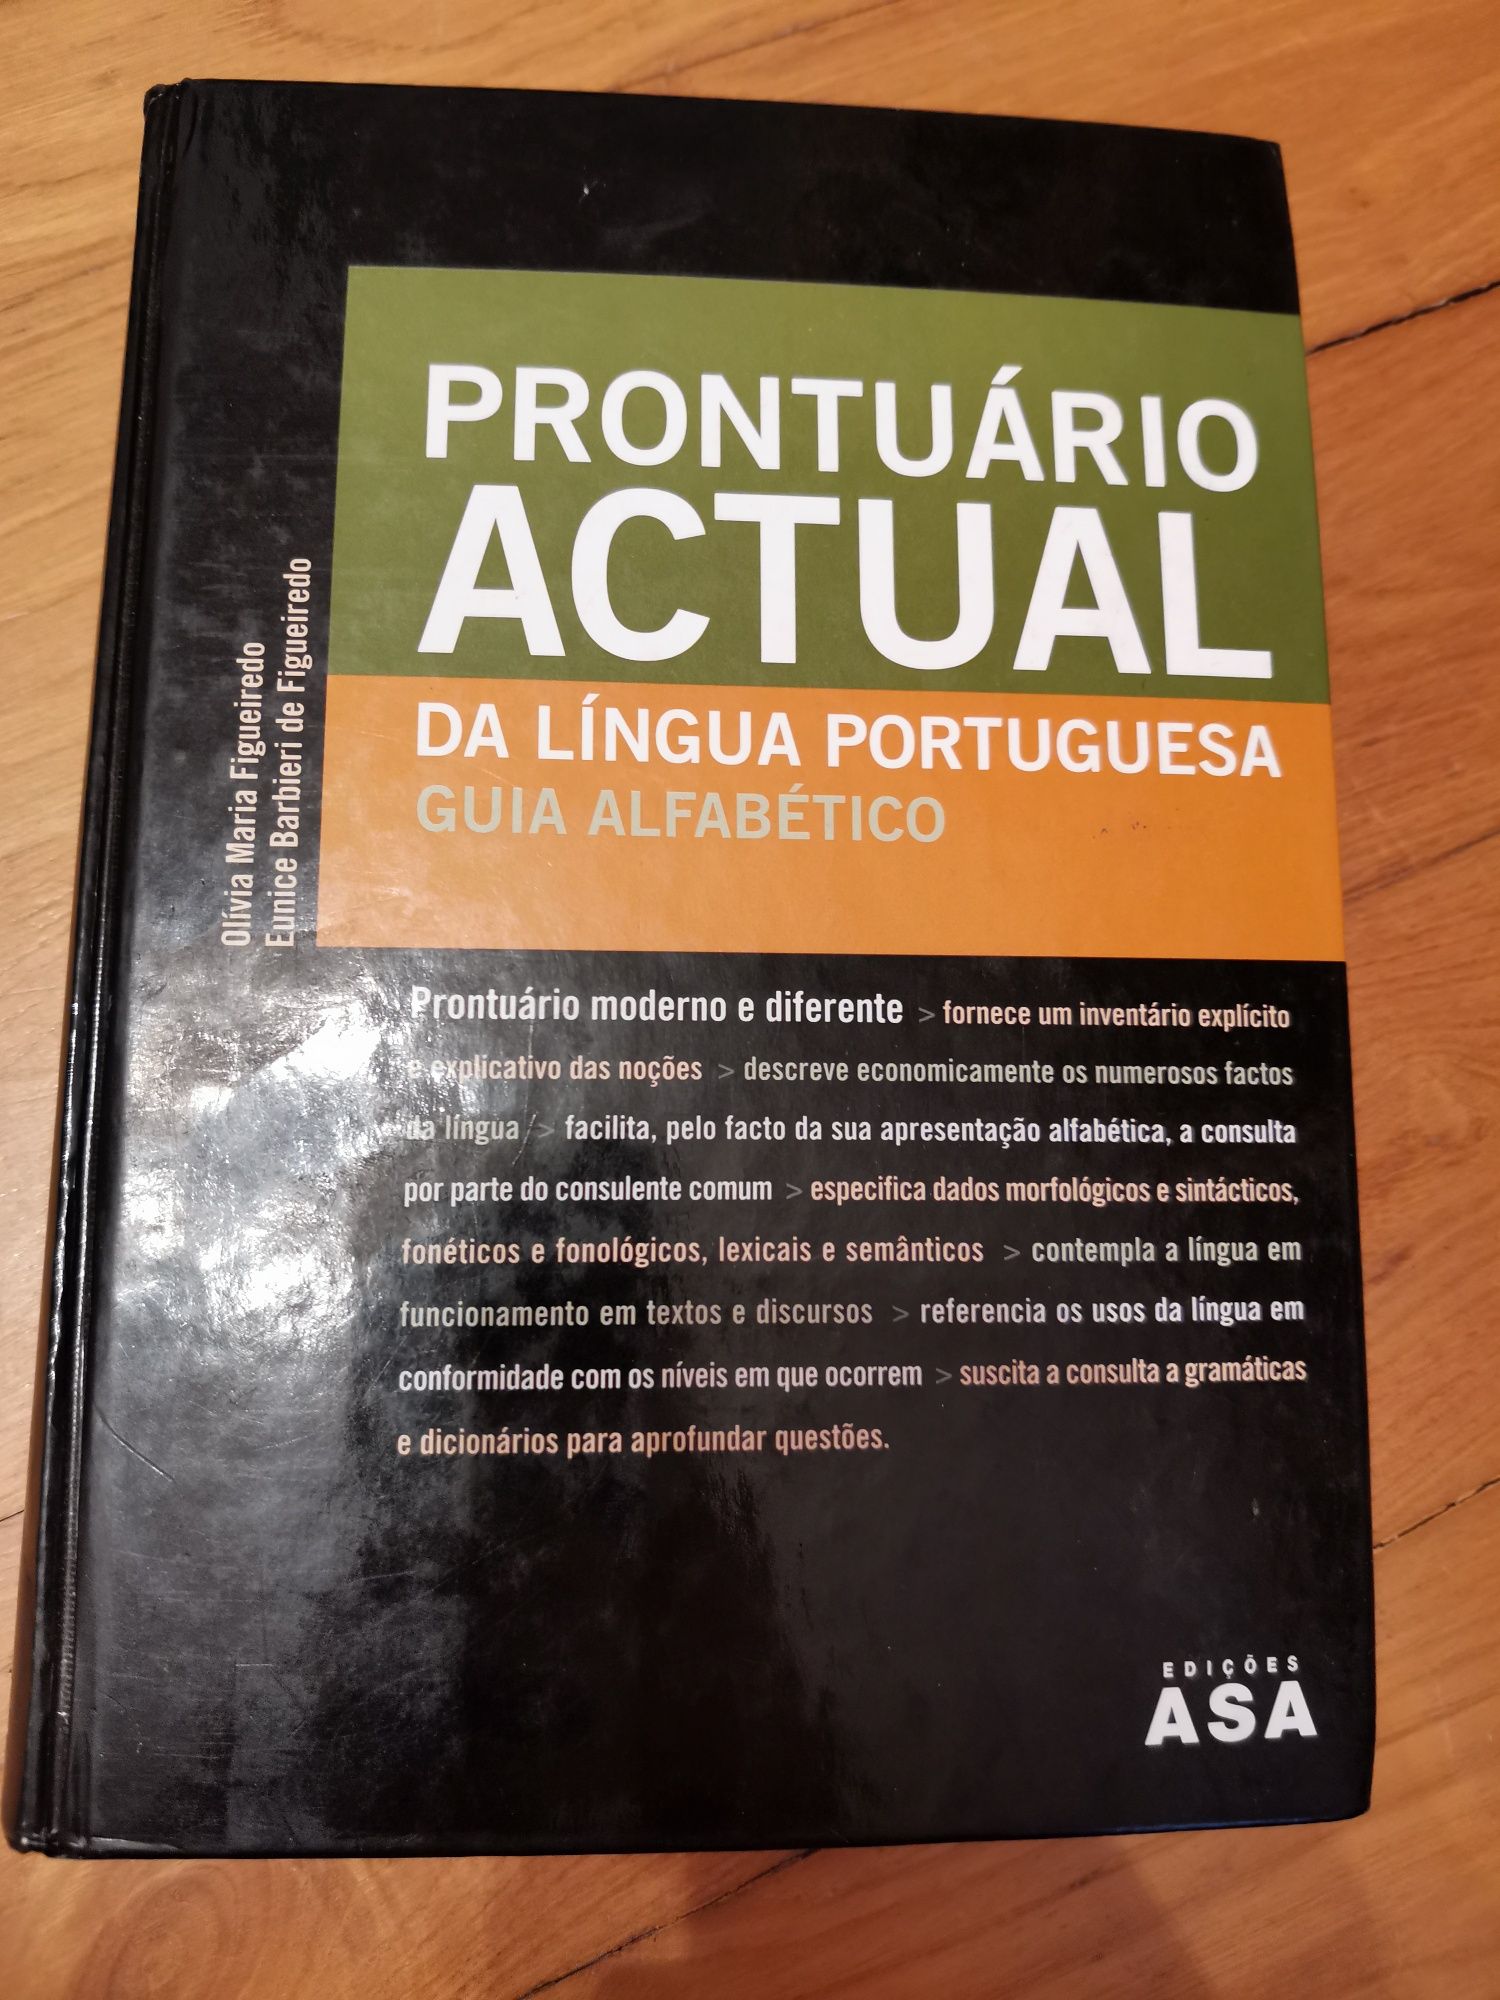 Livro Prontuário Actual da Língua Portuguesa